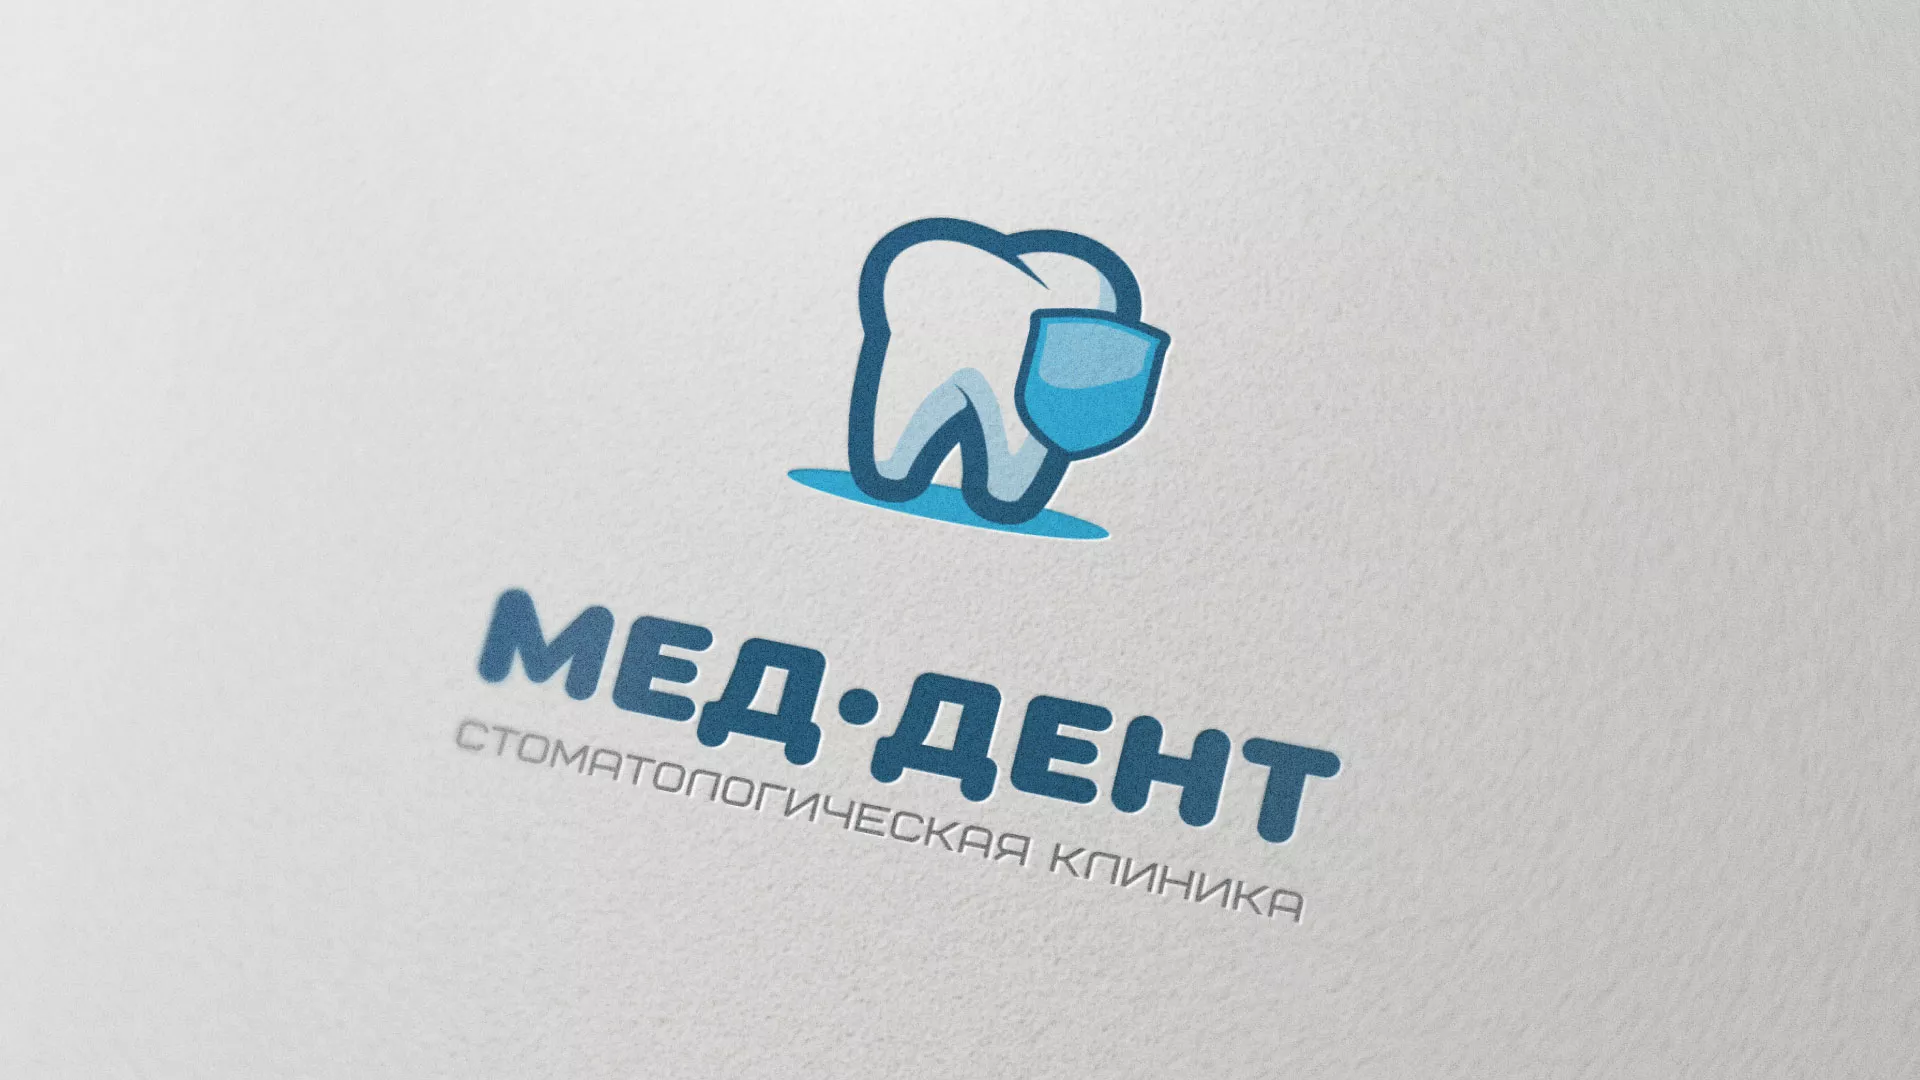 Разработка логотипа стоматологической клиники «МЕД-ДЕНТ» в Петрове Вале